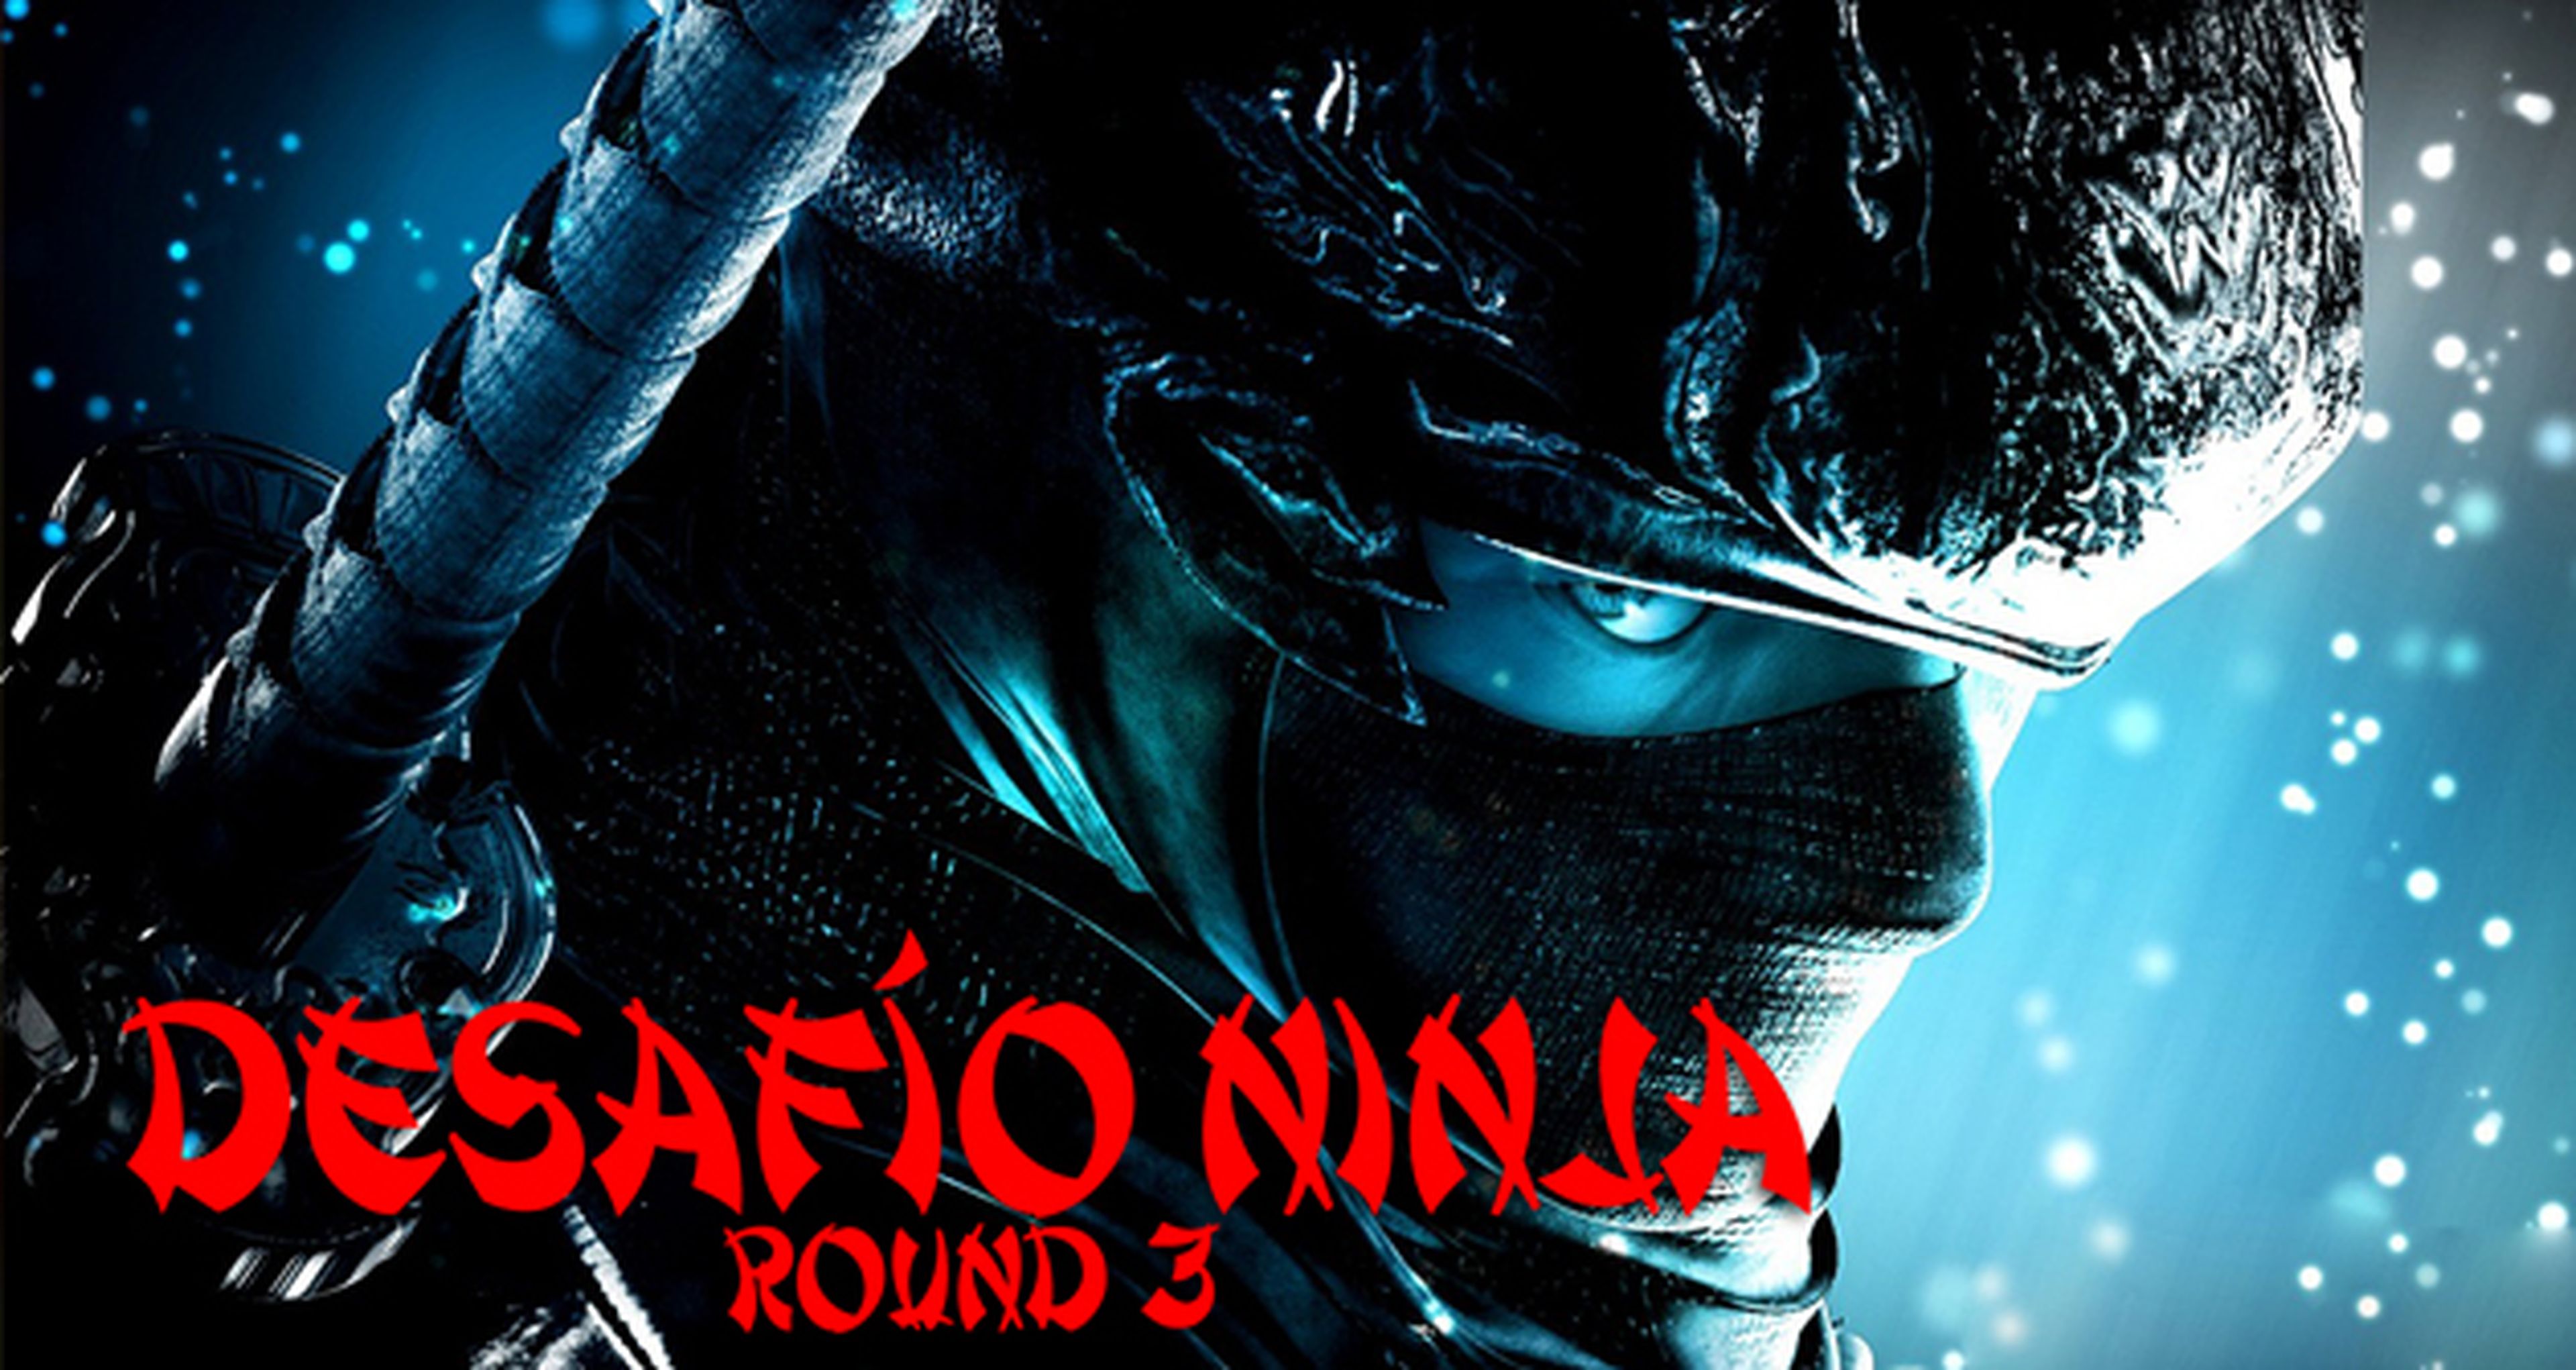 El gran desafío ninja: Round 3